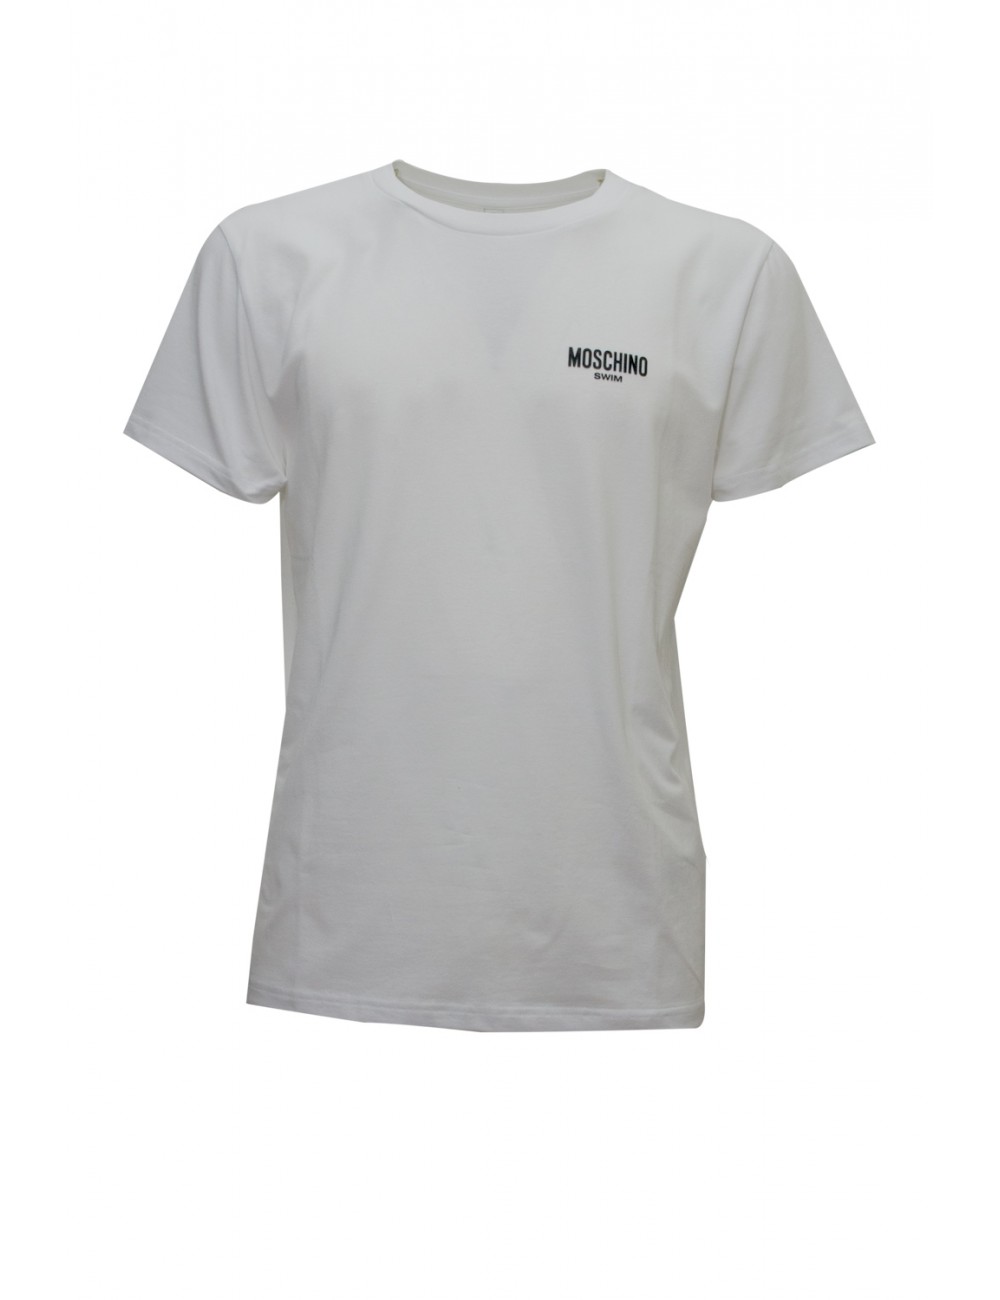 t-shirt moschino UOMO BIANCA 0001 - V3A0703 - 9408 vista frontale